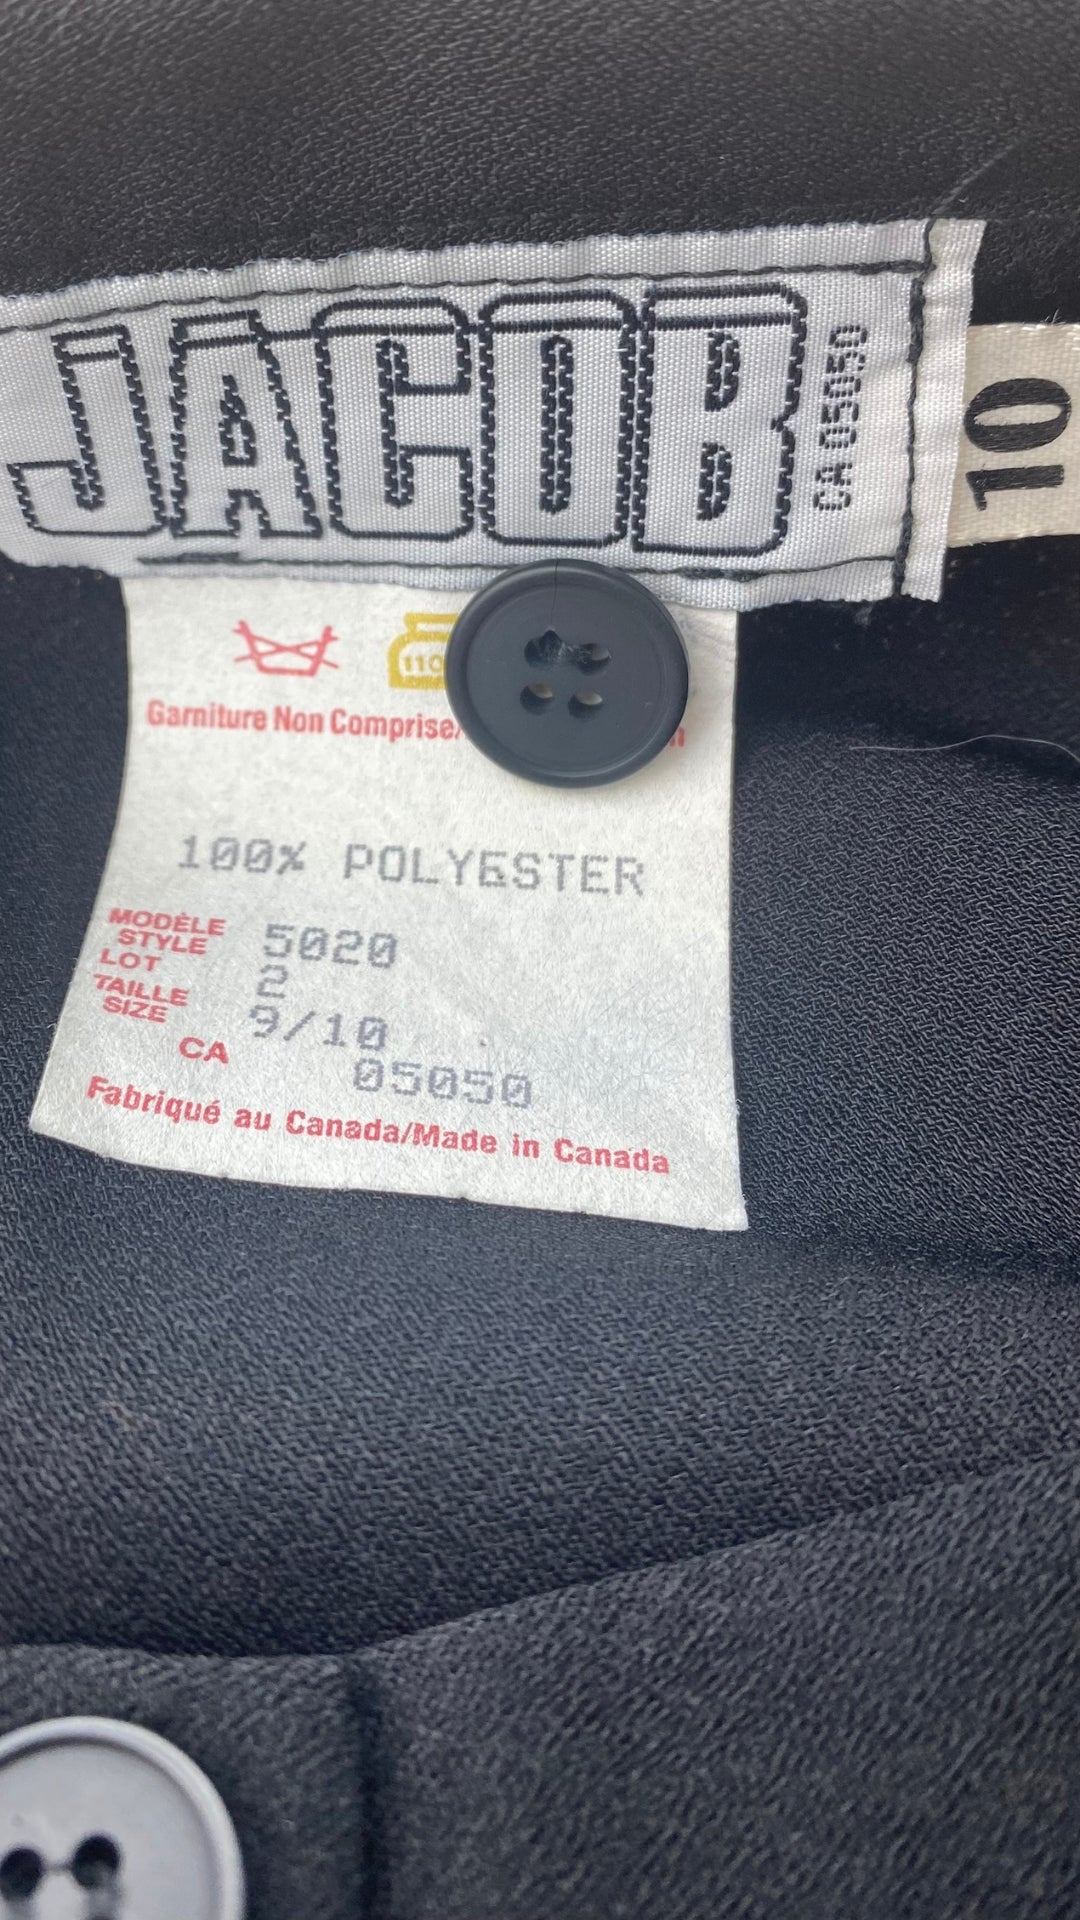 Jupe midi boutonnée vintage Jacob taille xs-s. Vue des étiquettes.